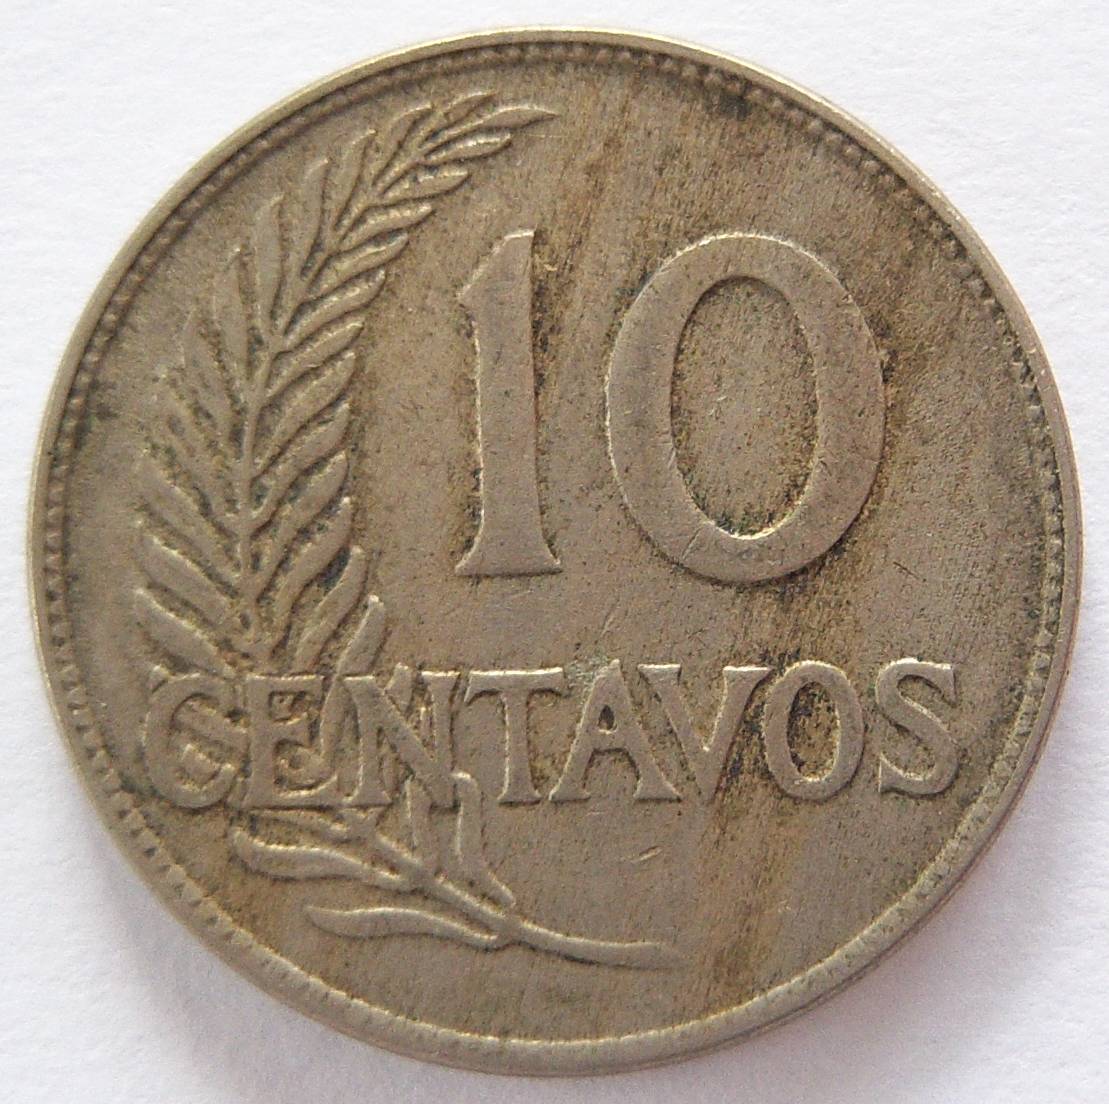  Peru 10 Centavos 1918   